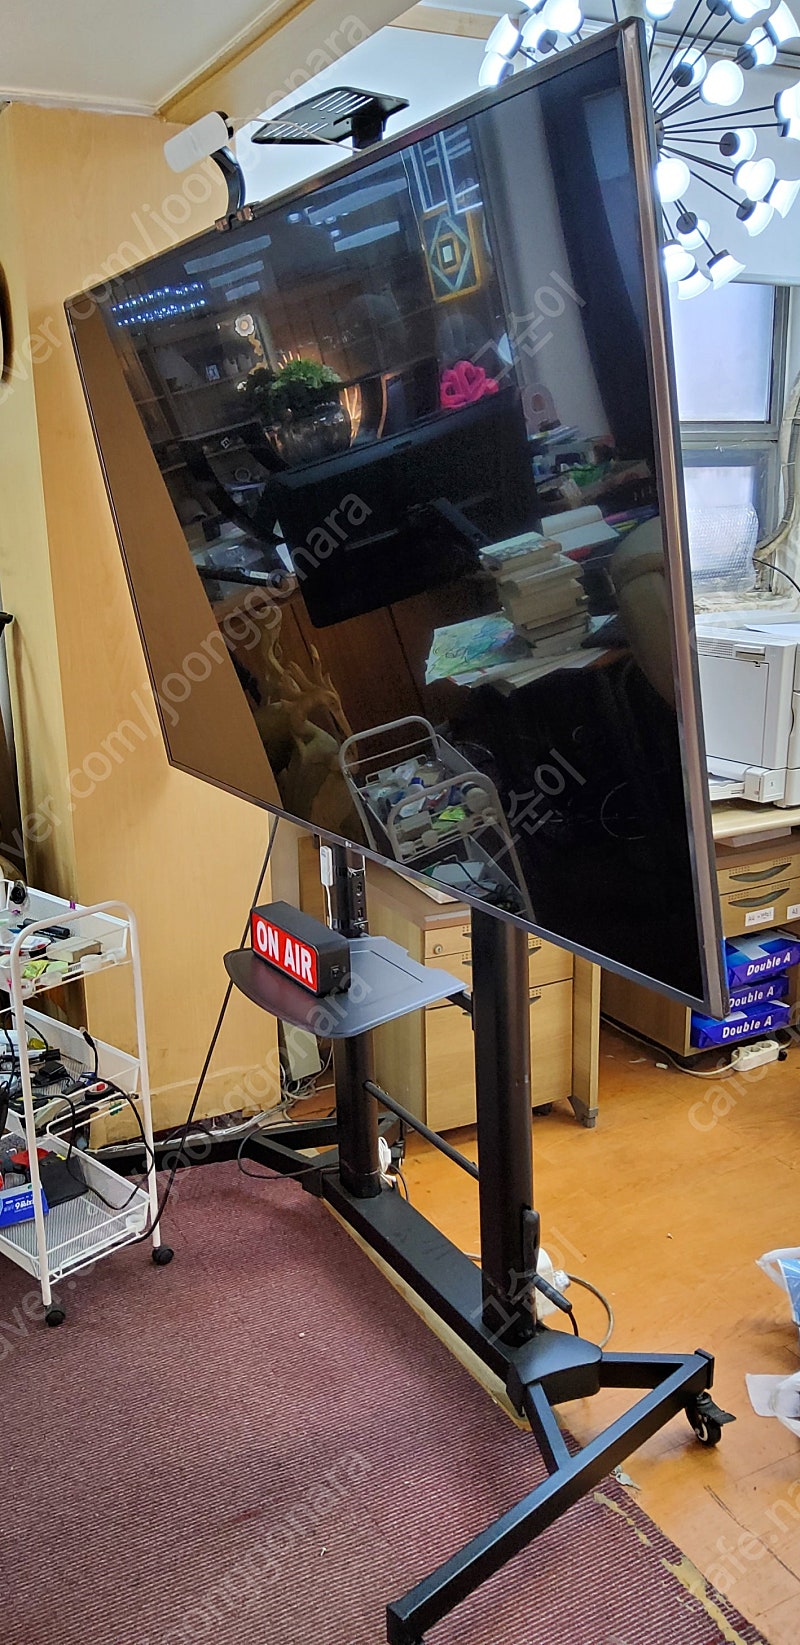 75인치 LG TV (4K UHD) + 이동식 스탠드